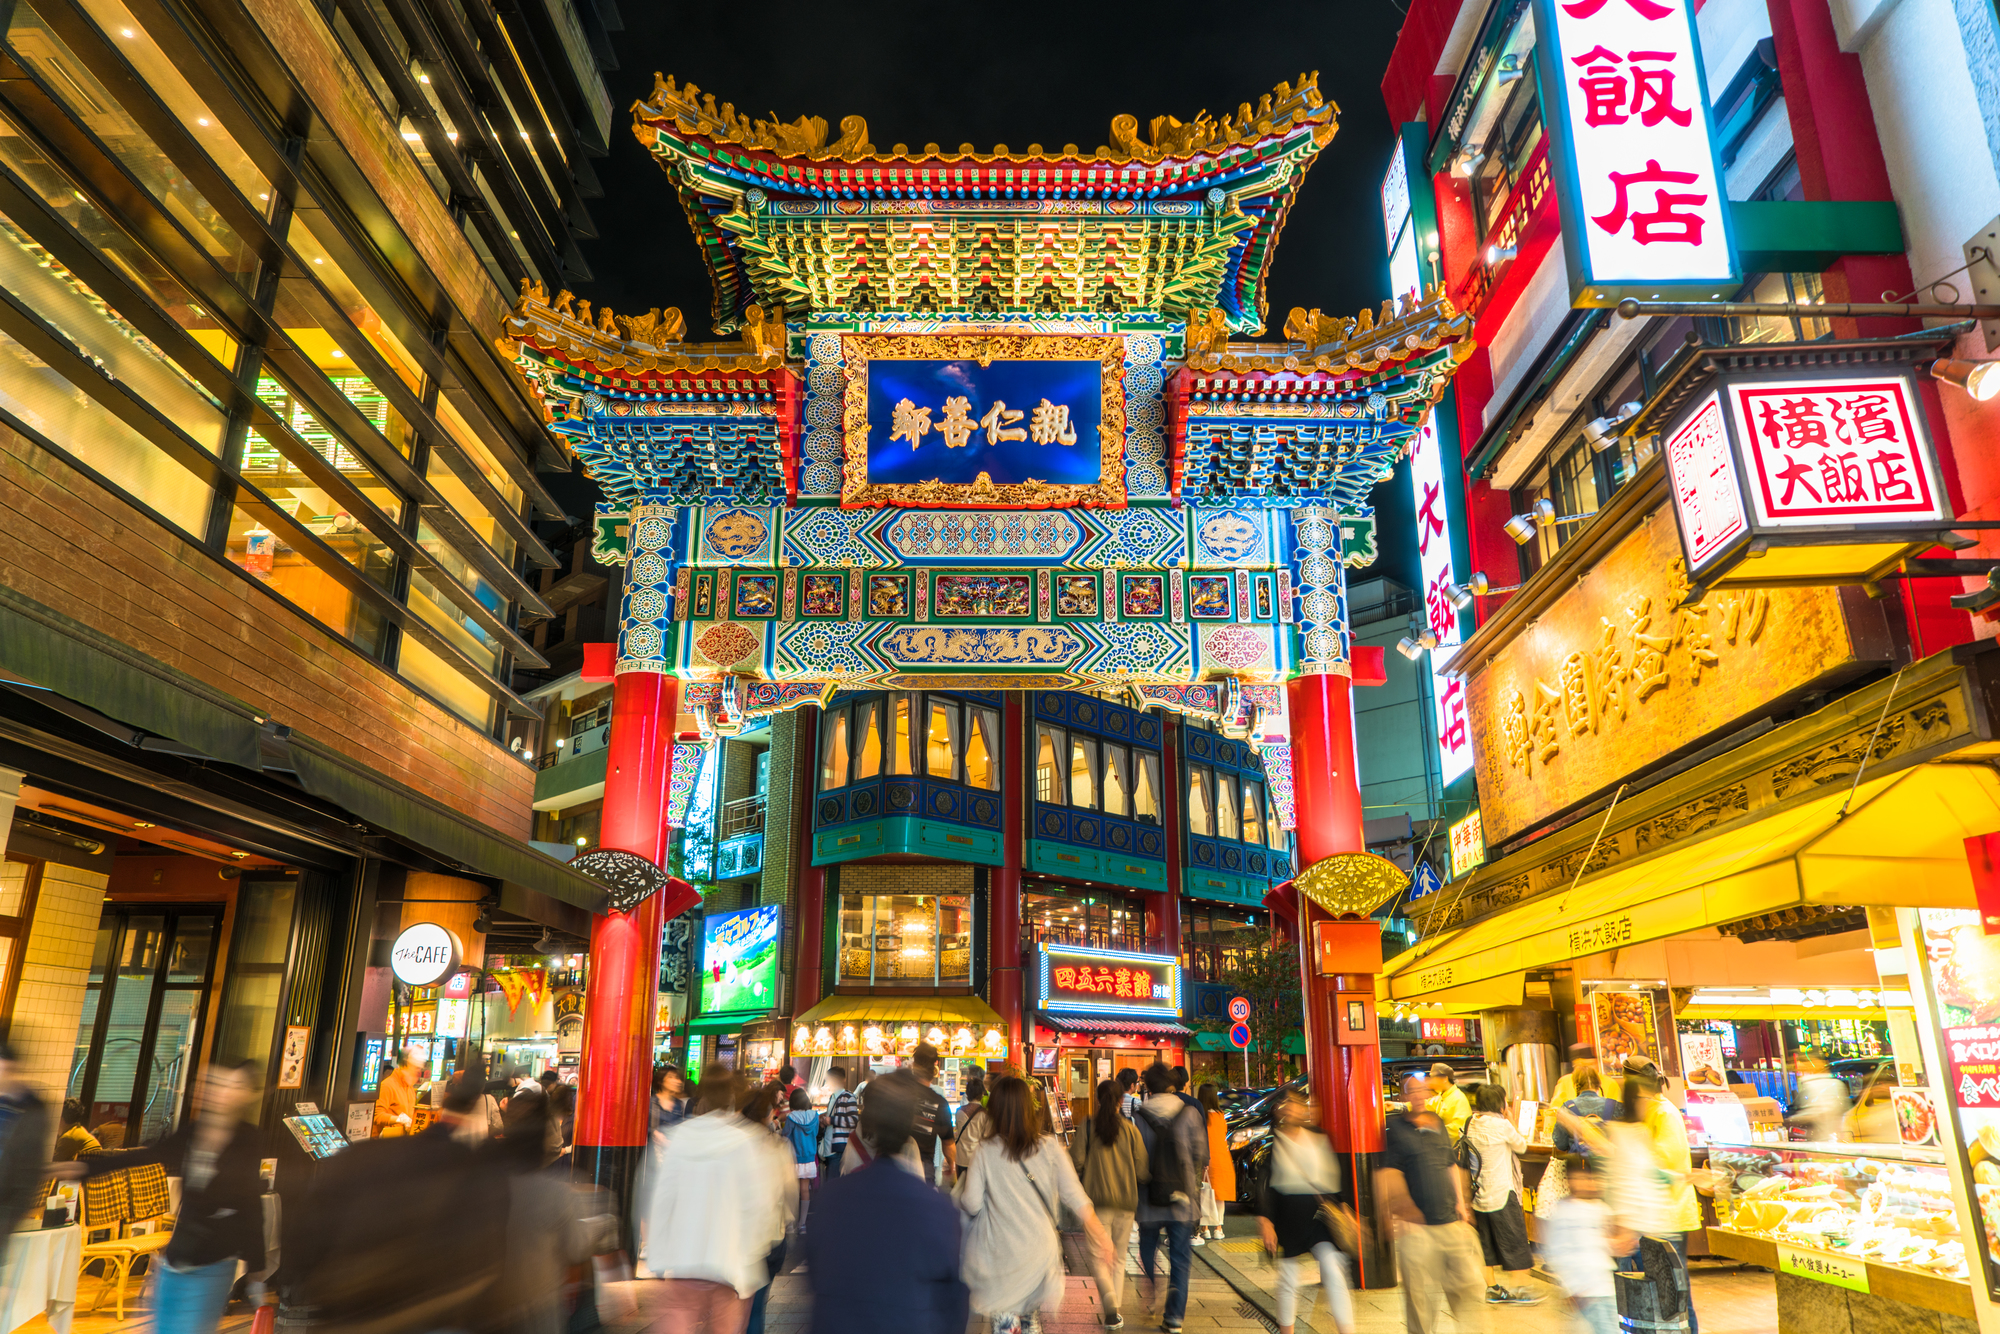 中国との出会いの場所 横浜中華街の歴史とコンサルティングの始まり